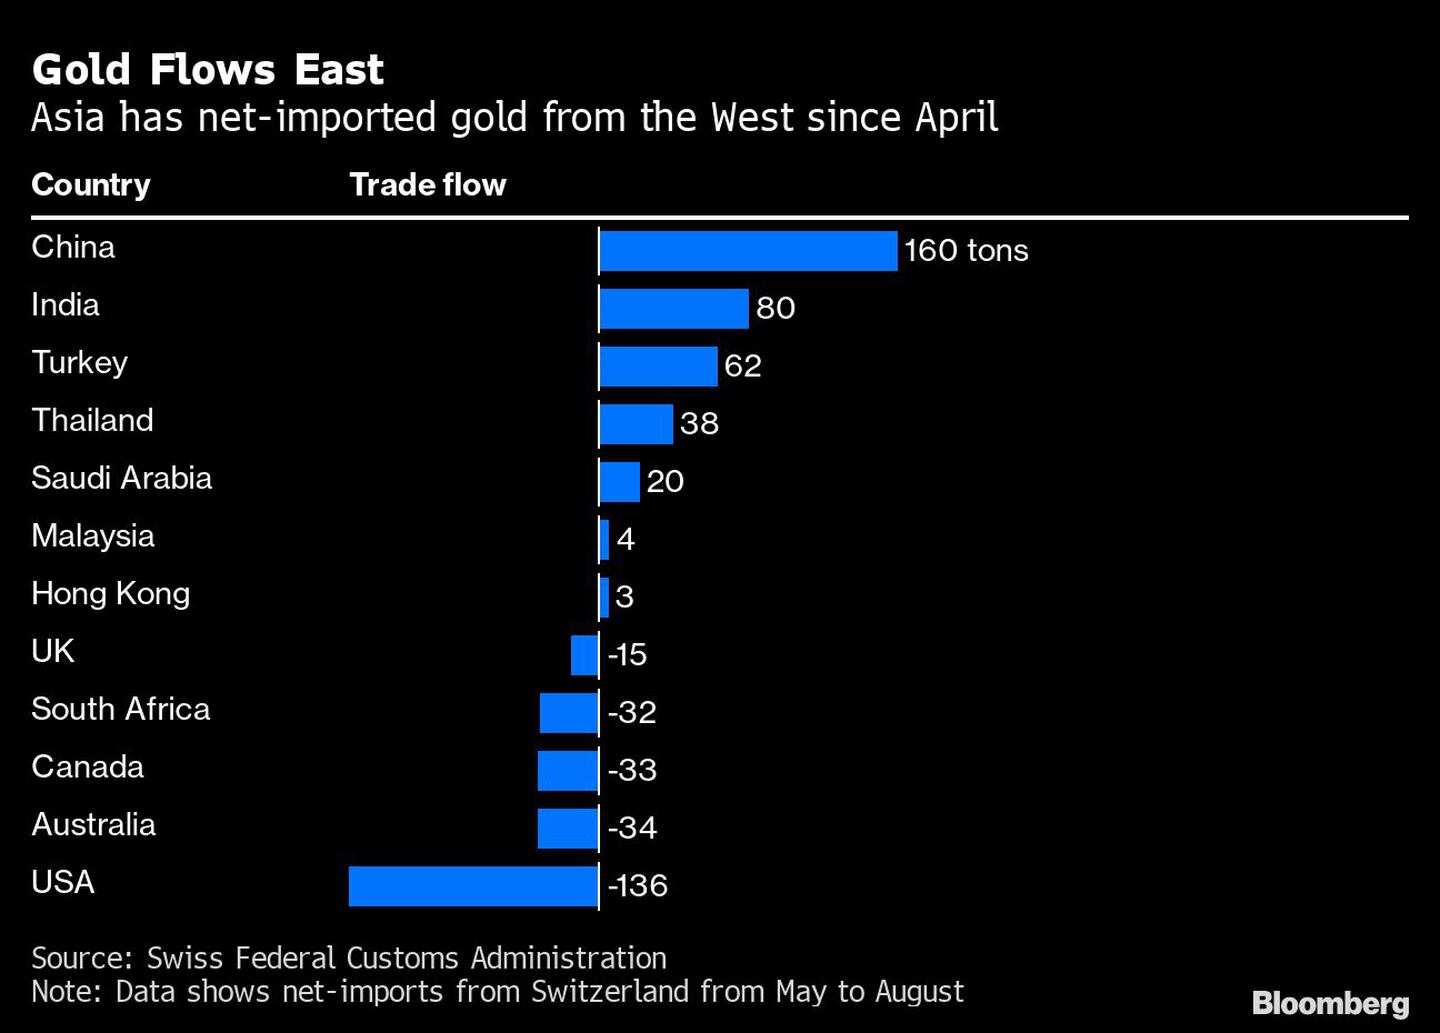 Flujos de oro hacia el Este | Asia ha importado oro neto de Occidente desde abrildfd